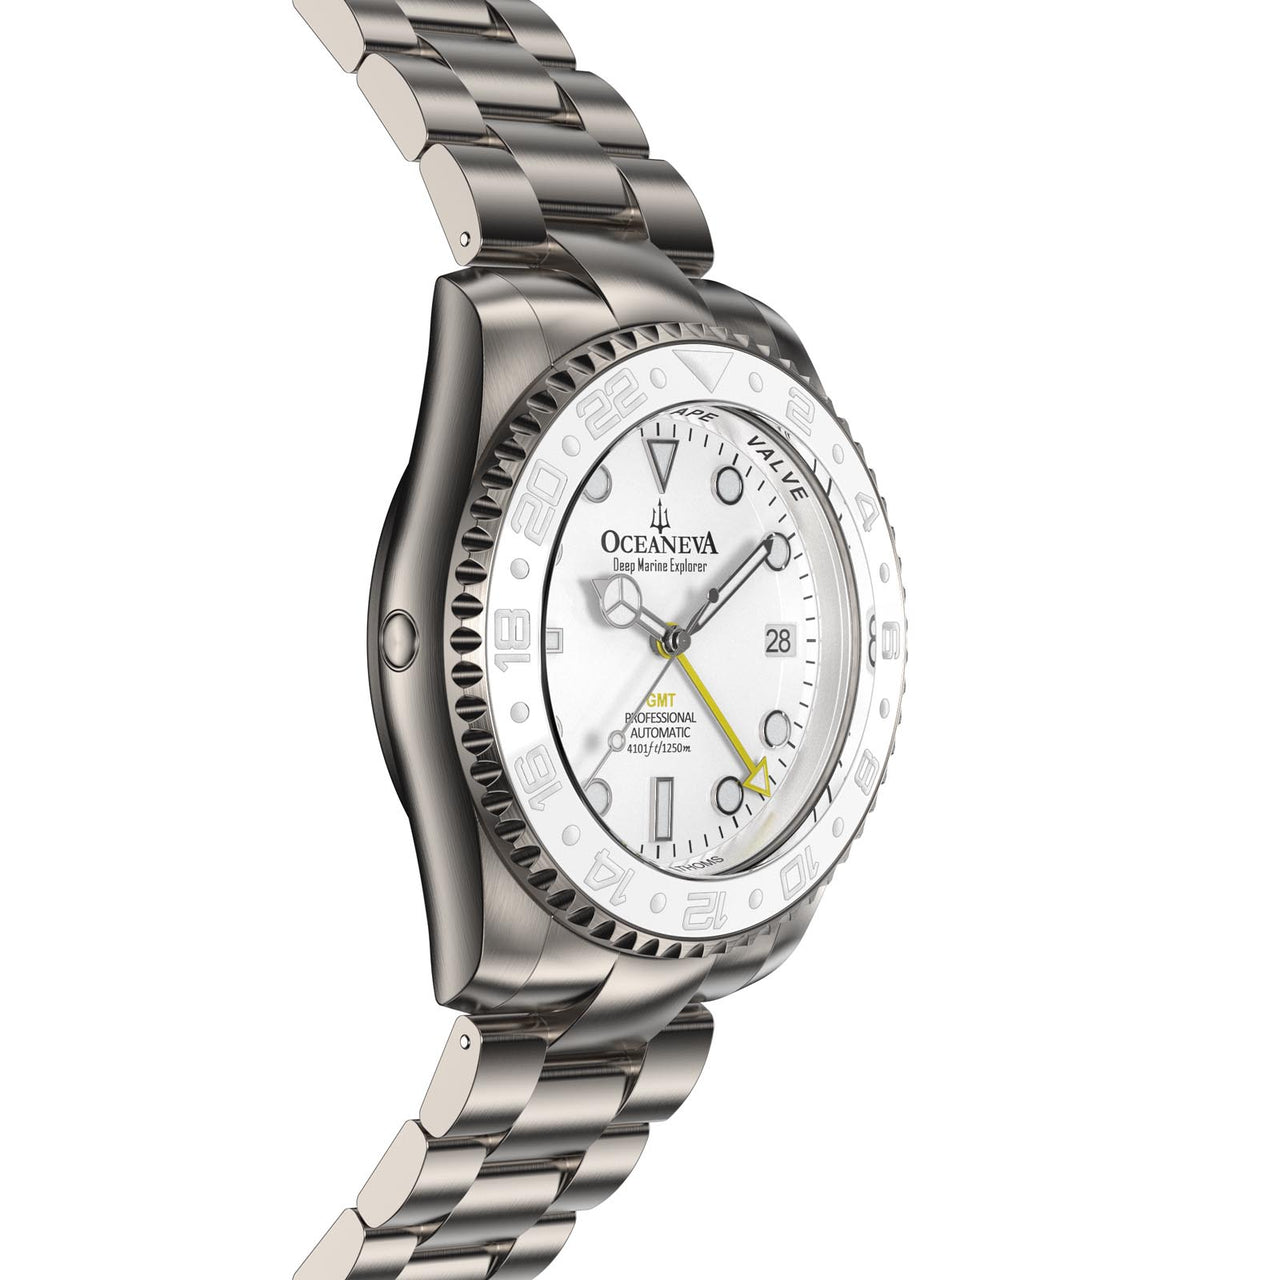 Elegant Oceaneva Titanium GMT Automatic Watch with Helium Escape Valve detail